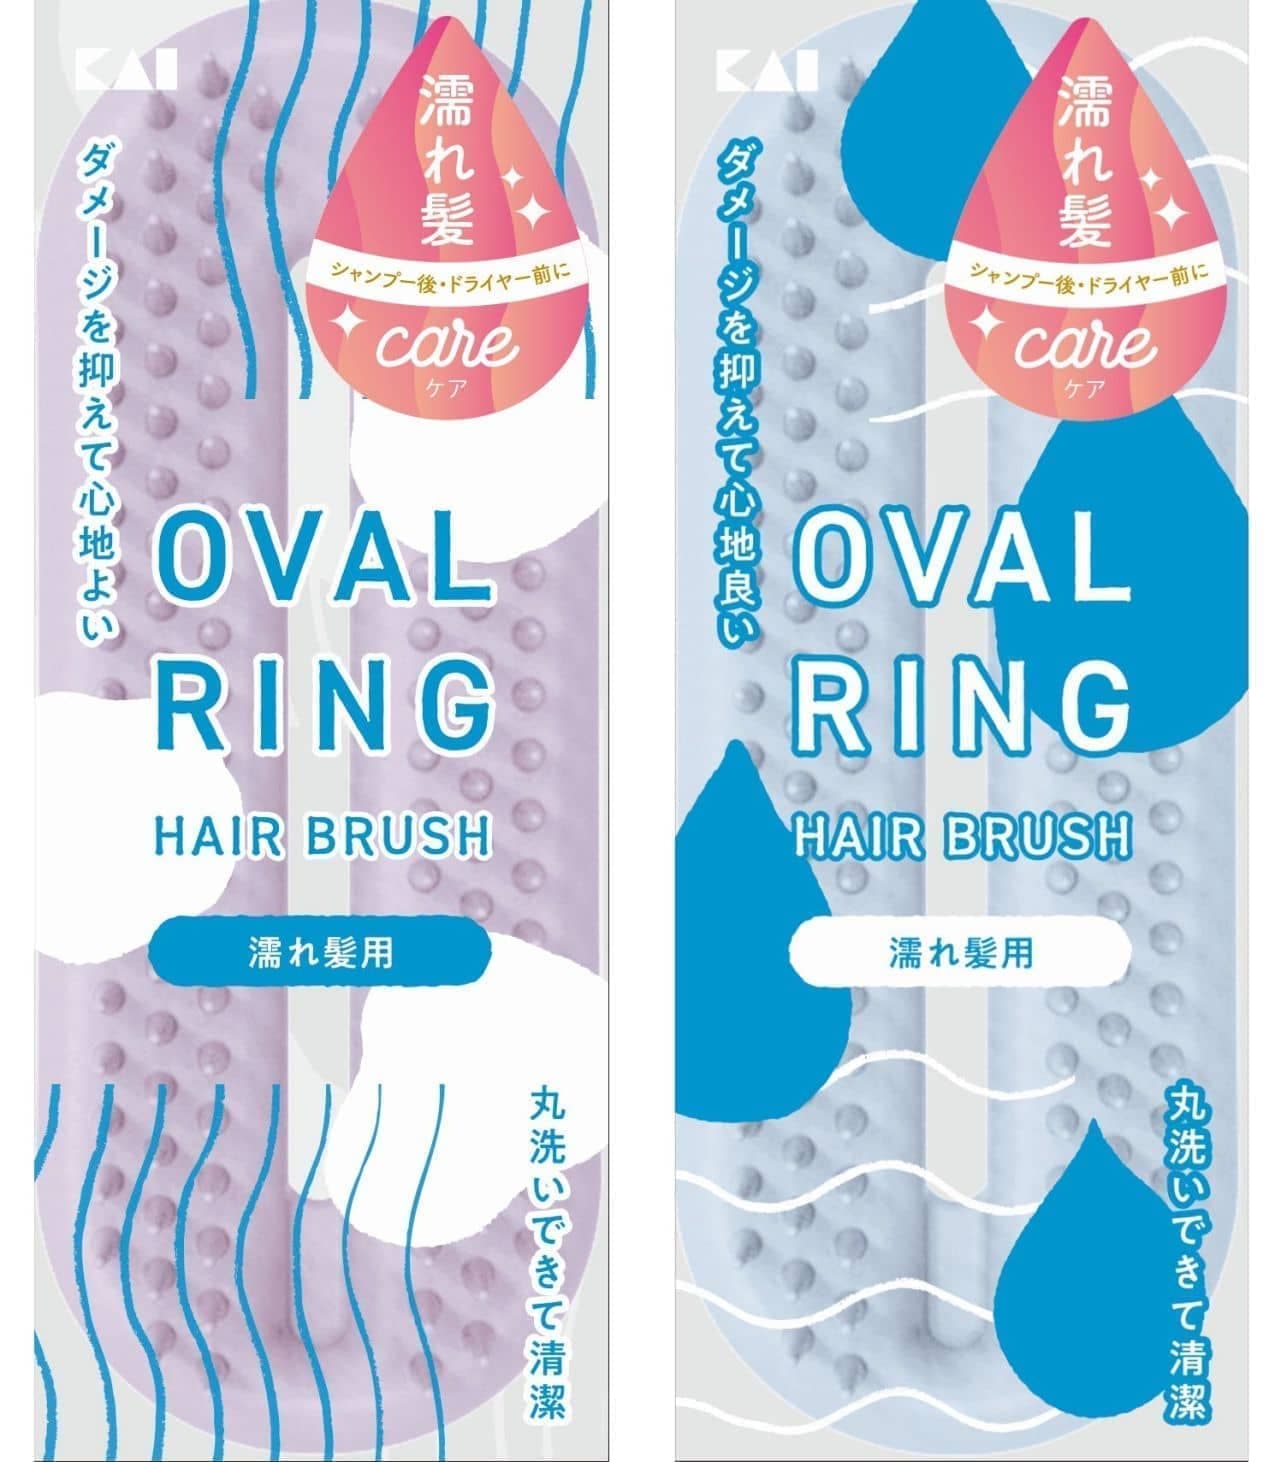 KAI "Oval Ring Hairbrush for Wet Hair"